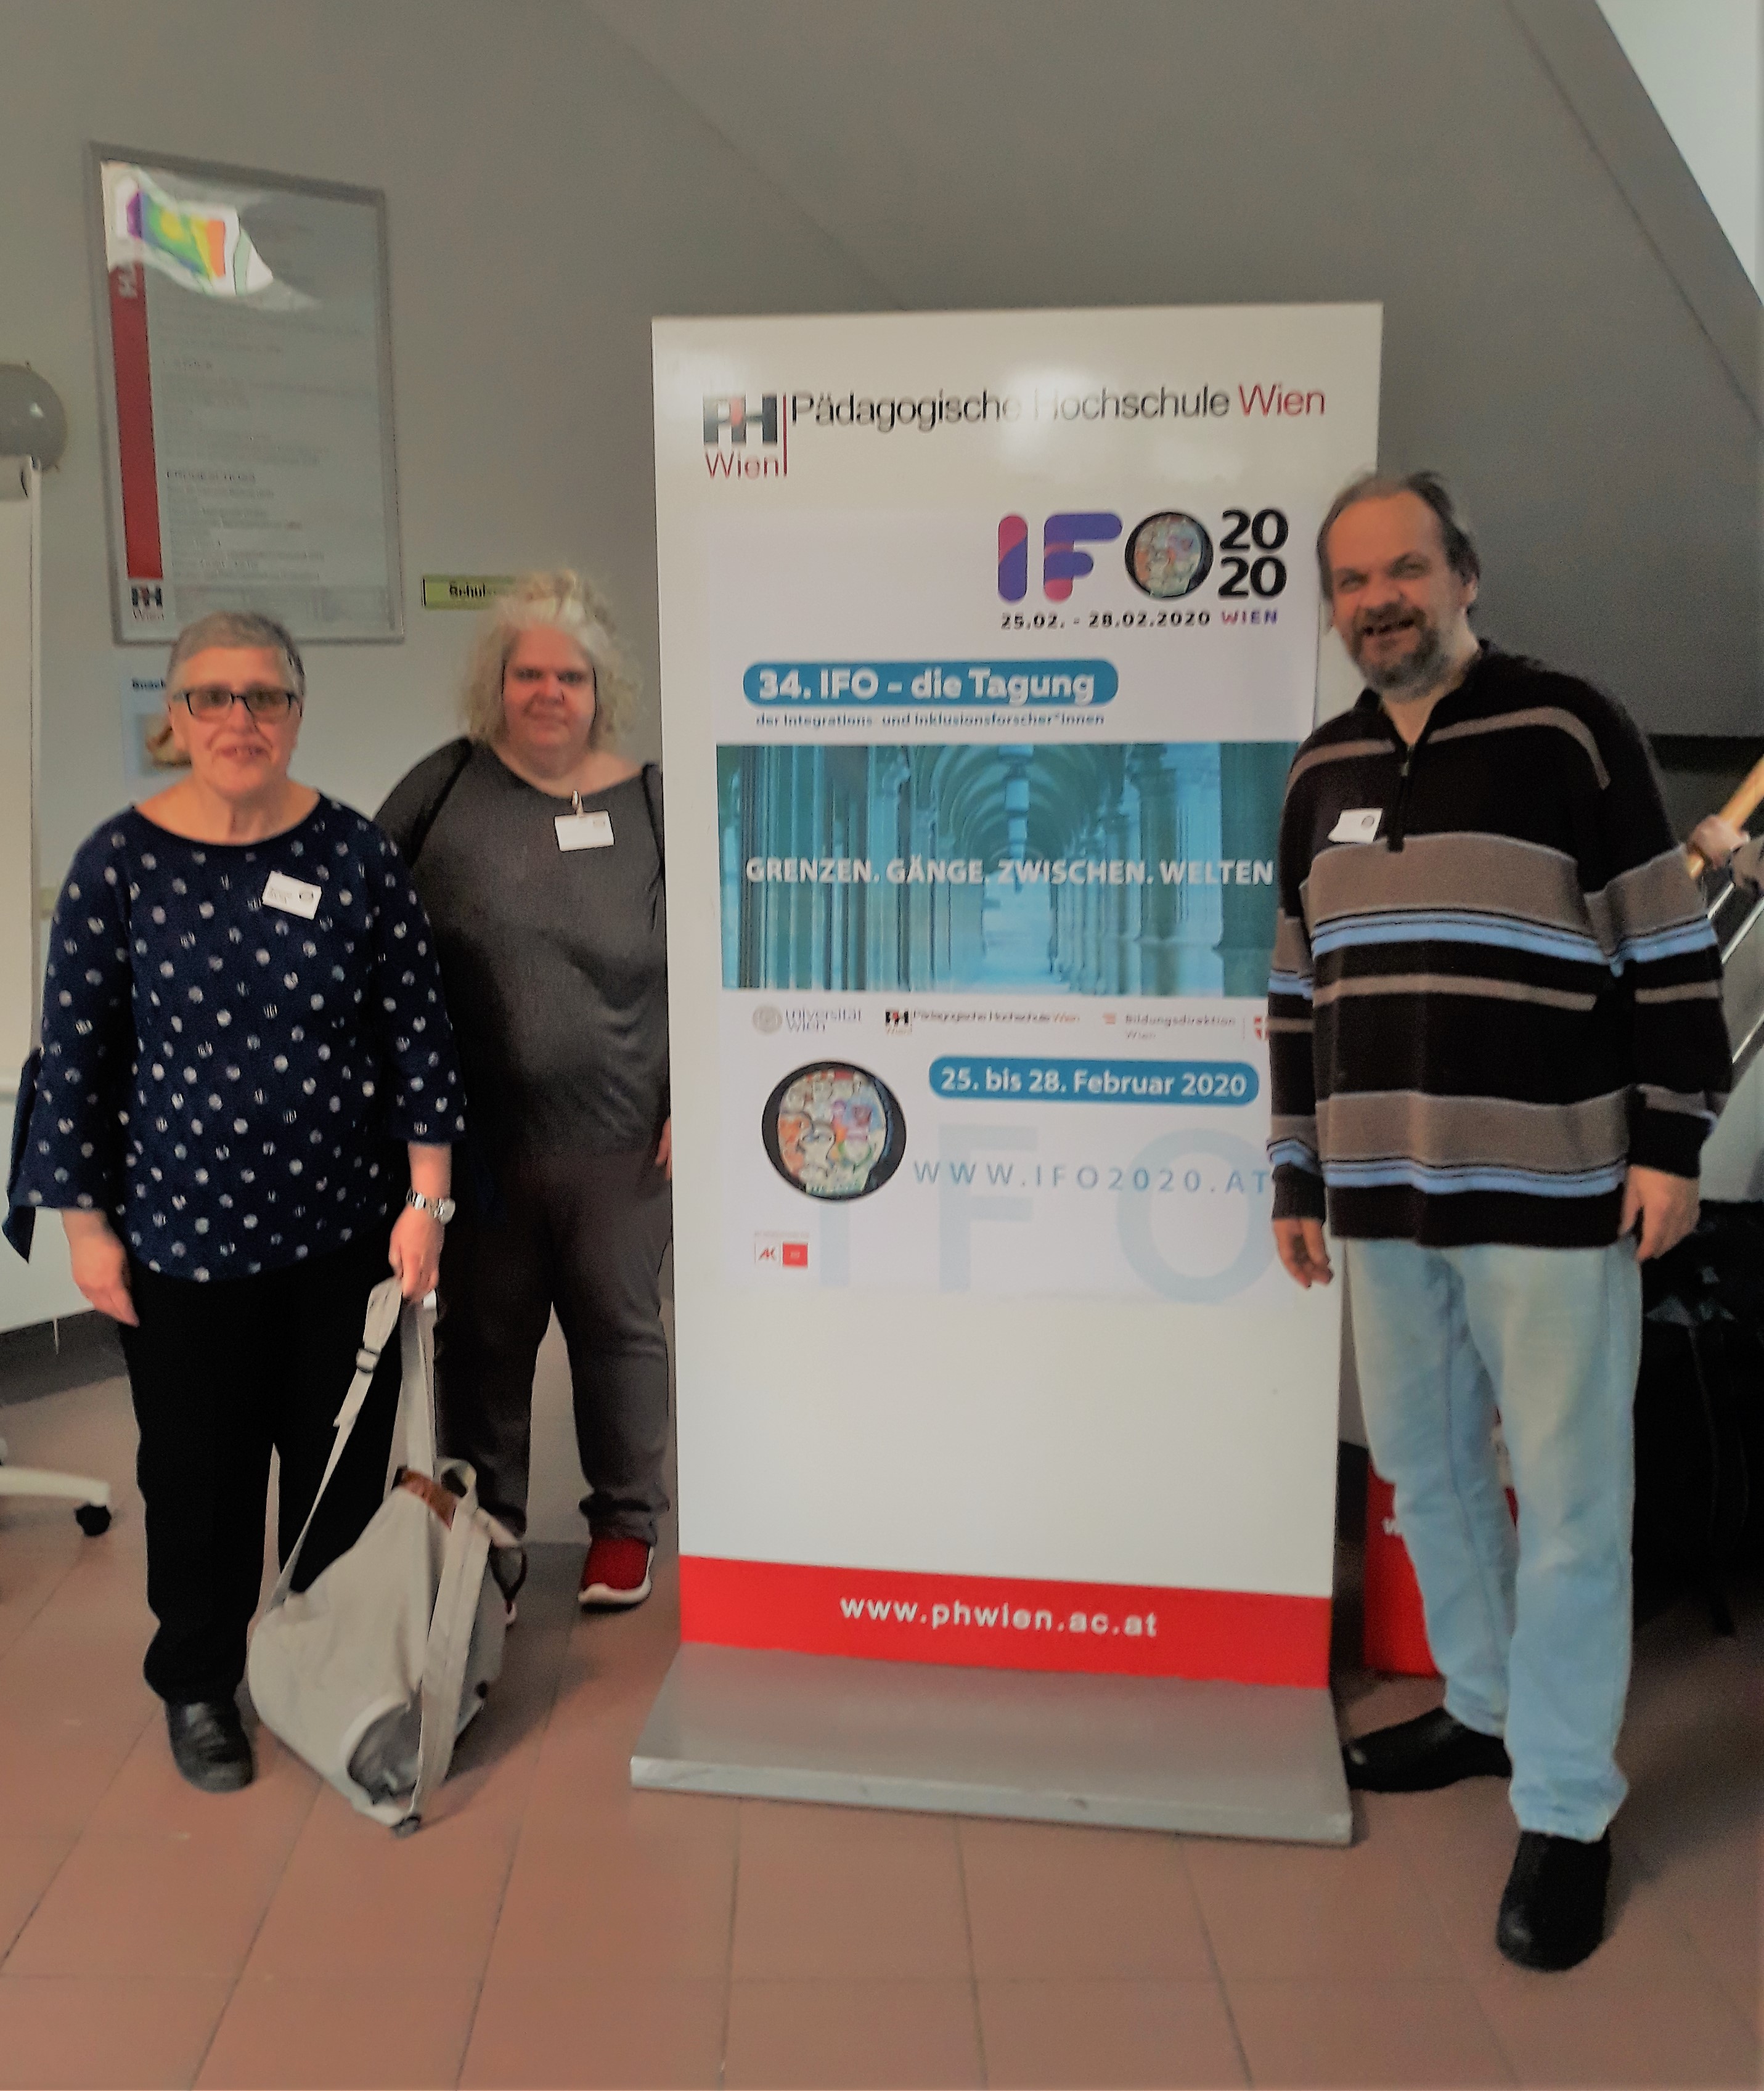 Das sind Maria Schwarr, Iris Kopera und Günther Leitner bei der IFO-Konferenz.